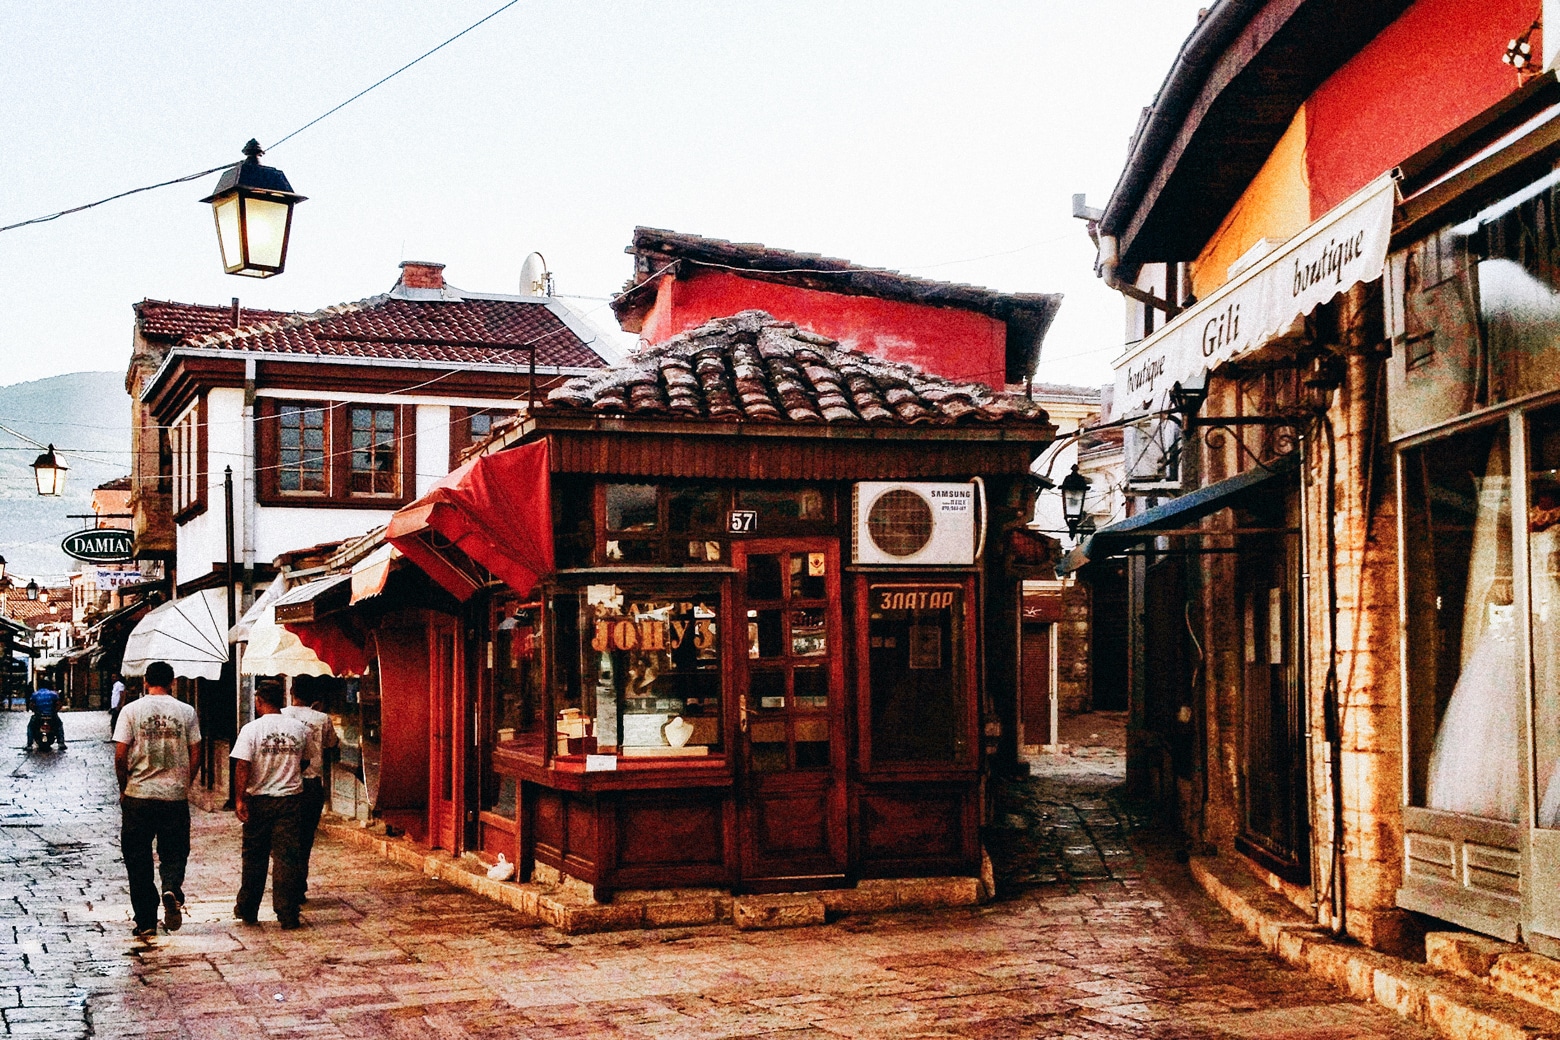 Skopje Bazaar